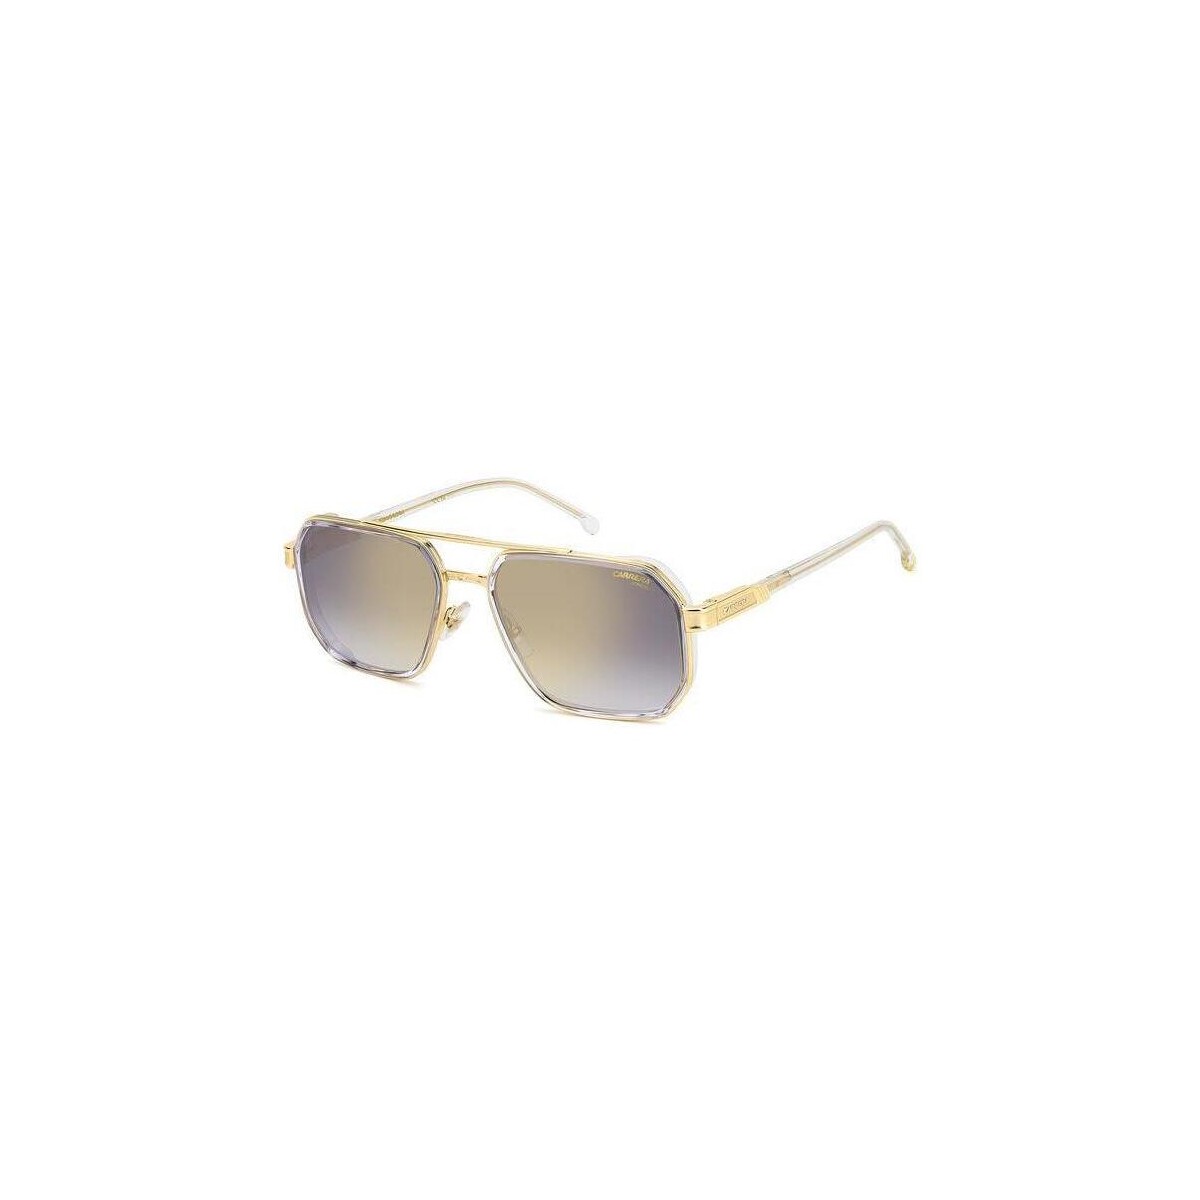 Orologi & Gioielli Uomo Occhiali da sole Carrera 1069/S Occhiali da sole, Cristallo/Grigio/oro, 58 mm Altri